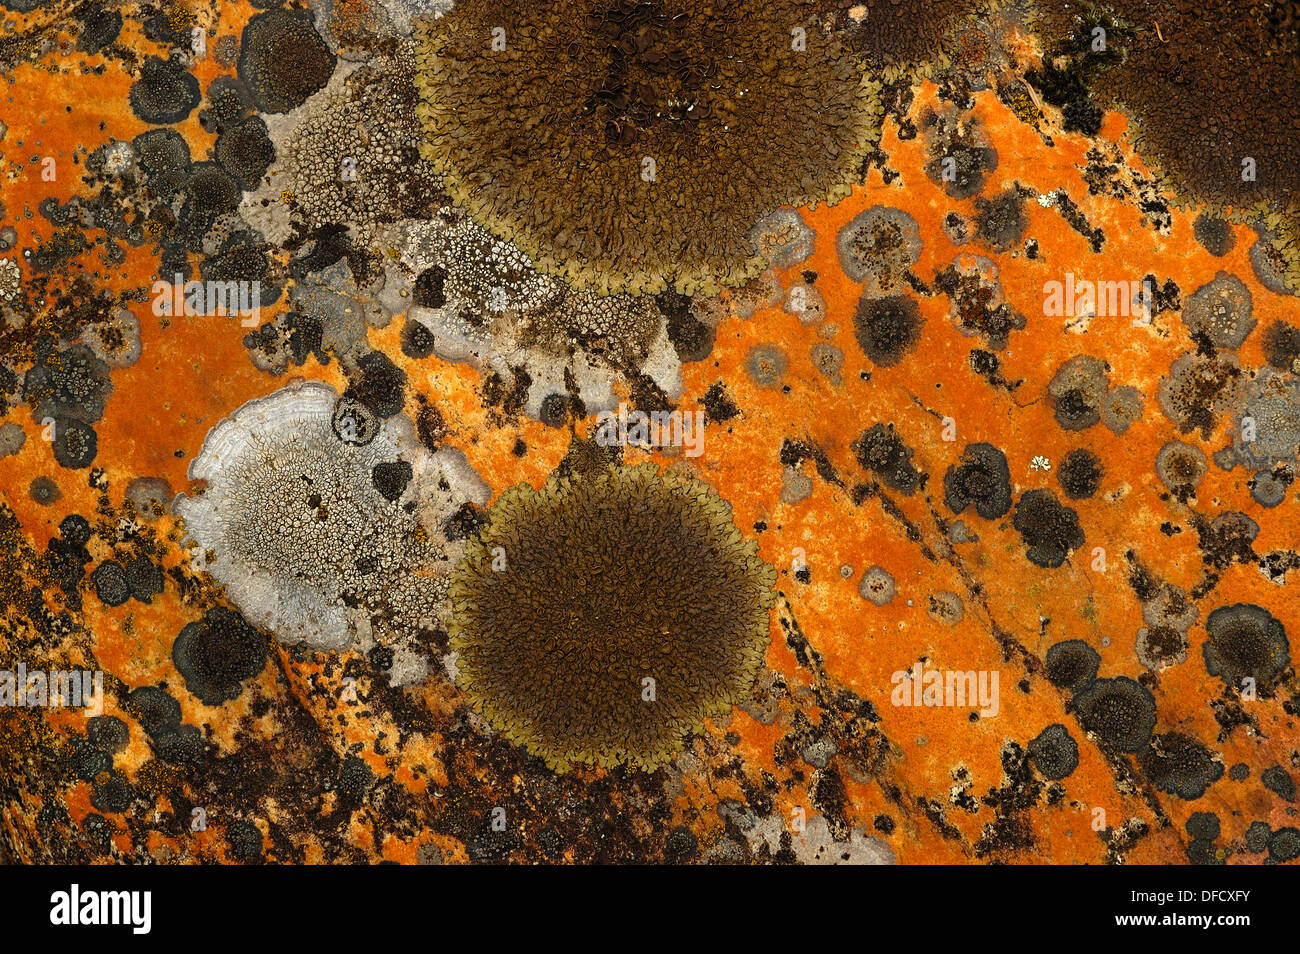 Lichen covering a stone Stock Photo